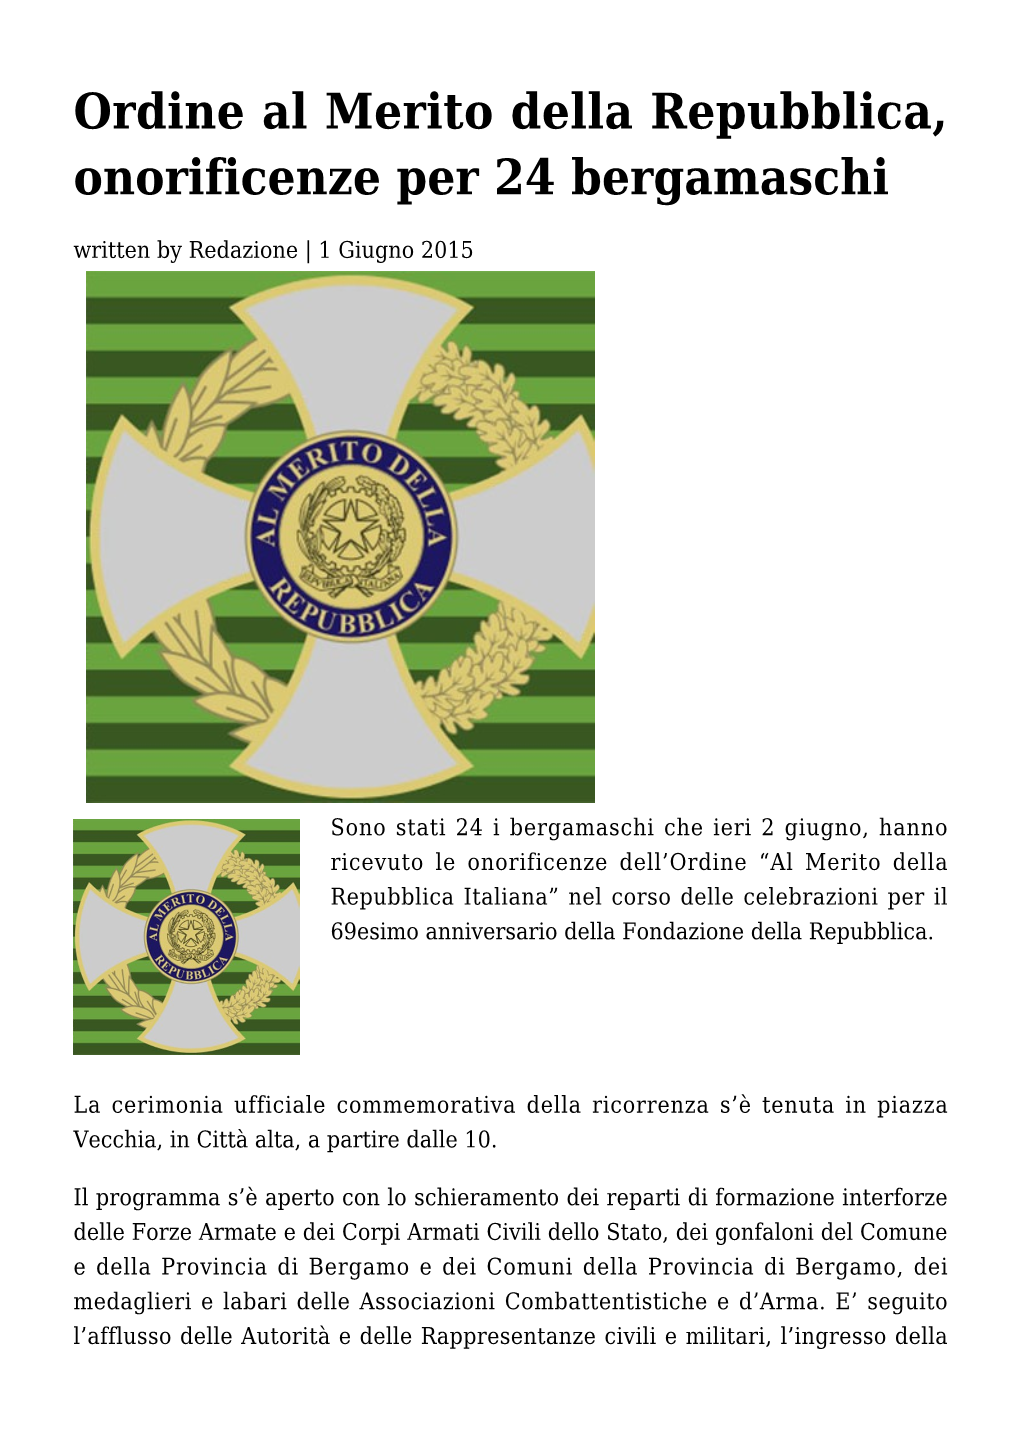 Ordine Al Merito Della Repubblica, Onorificenze Per 24 Bergamaschi Written by Redazione | 1 Giugno 2015